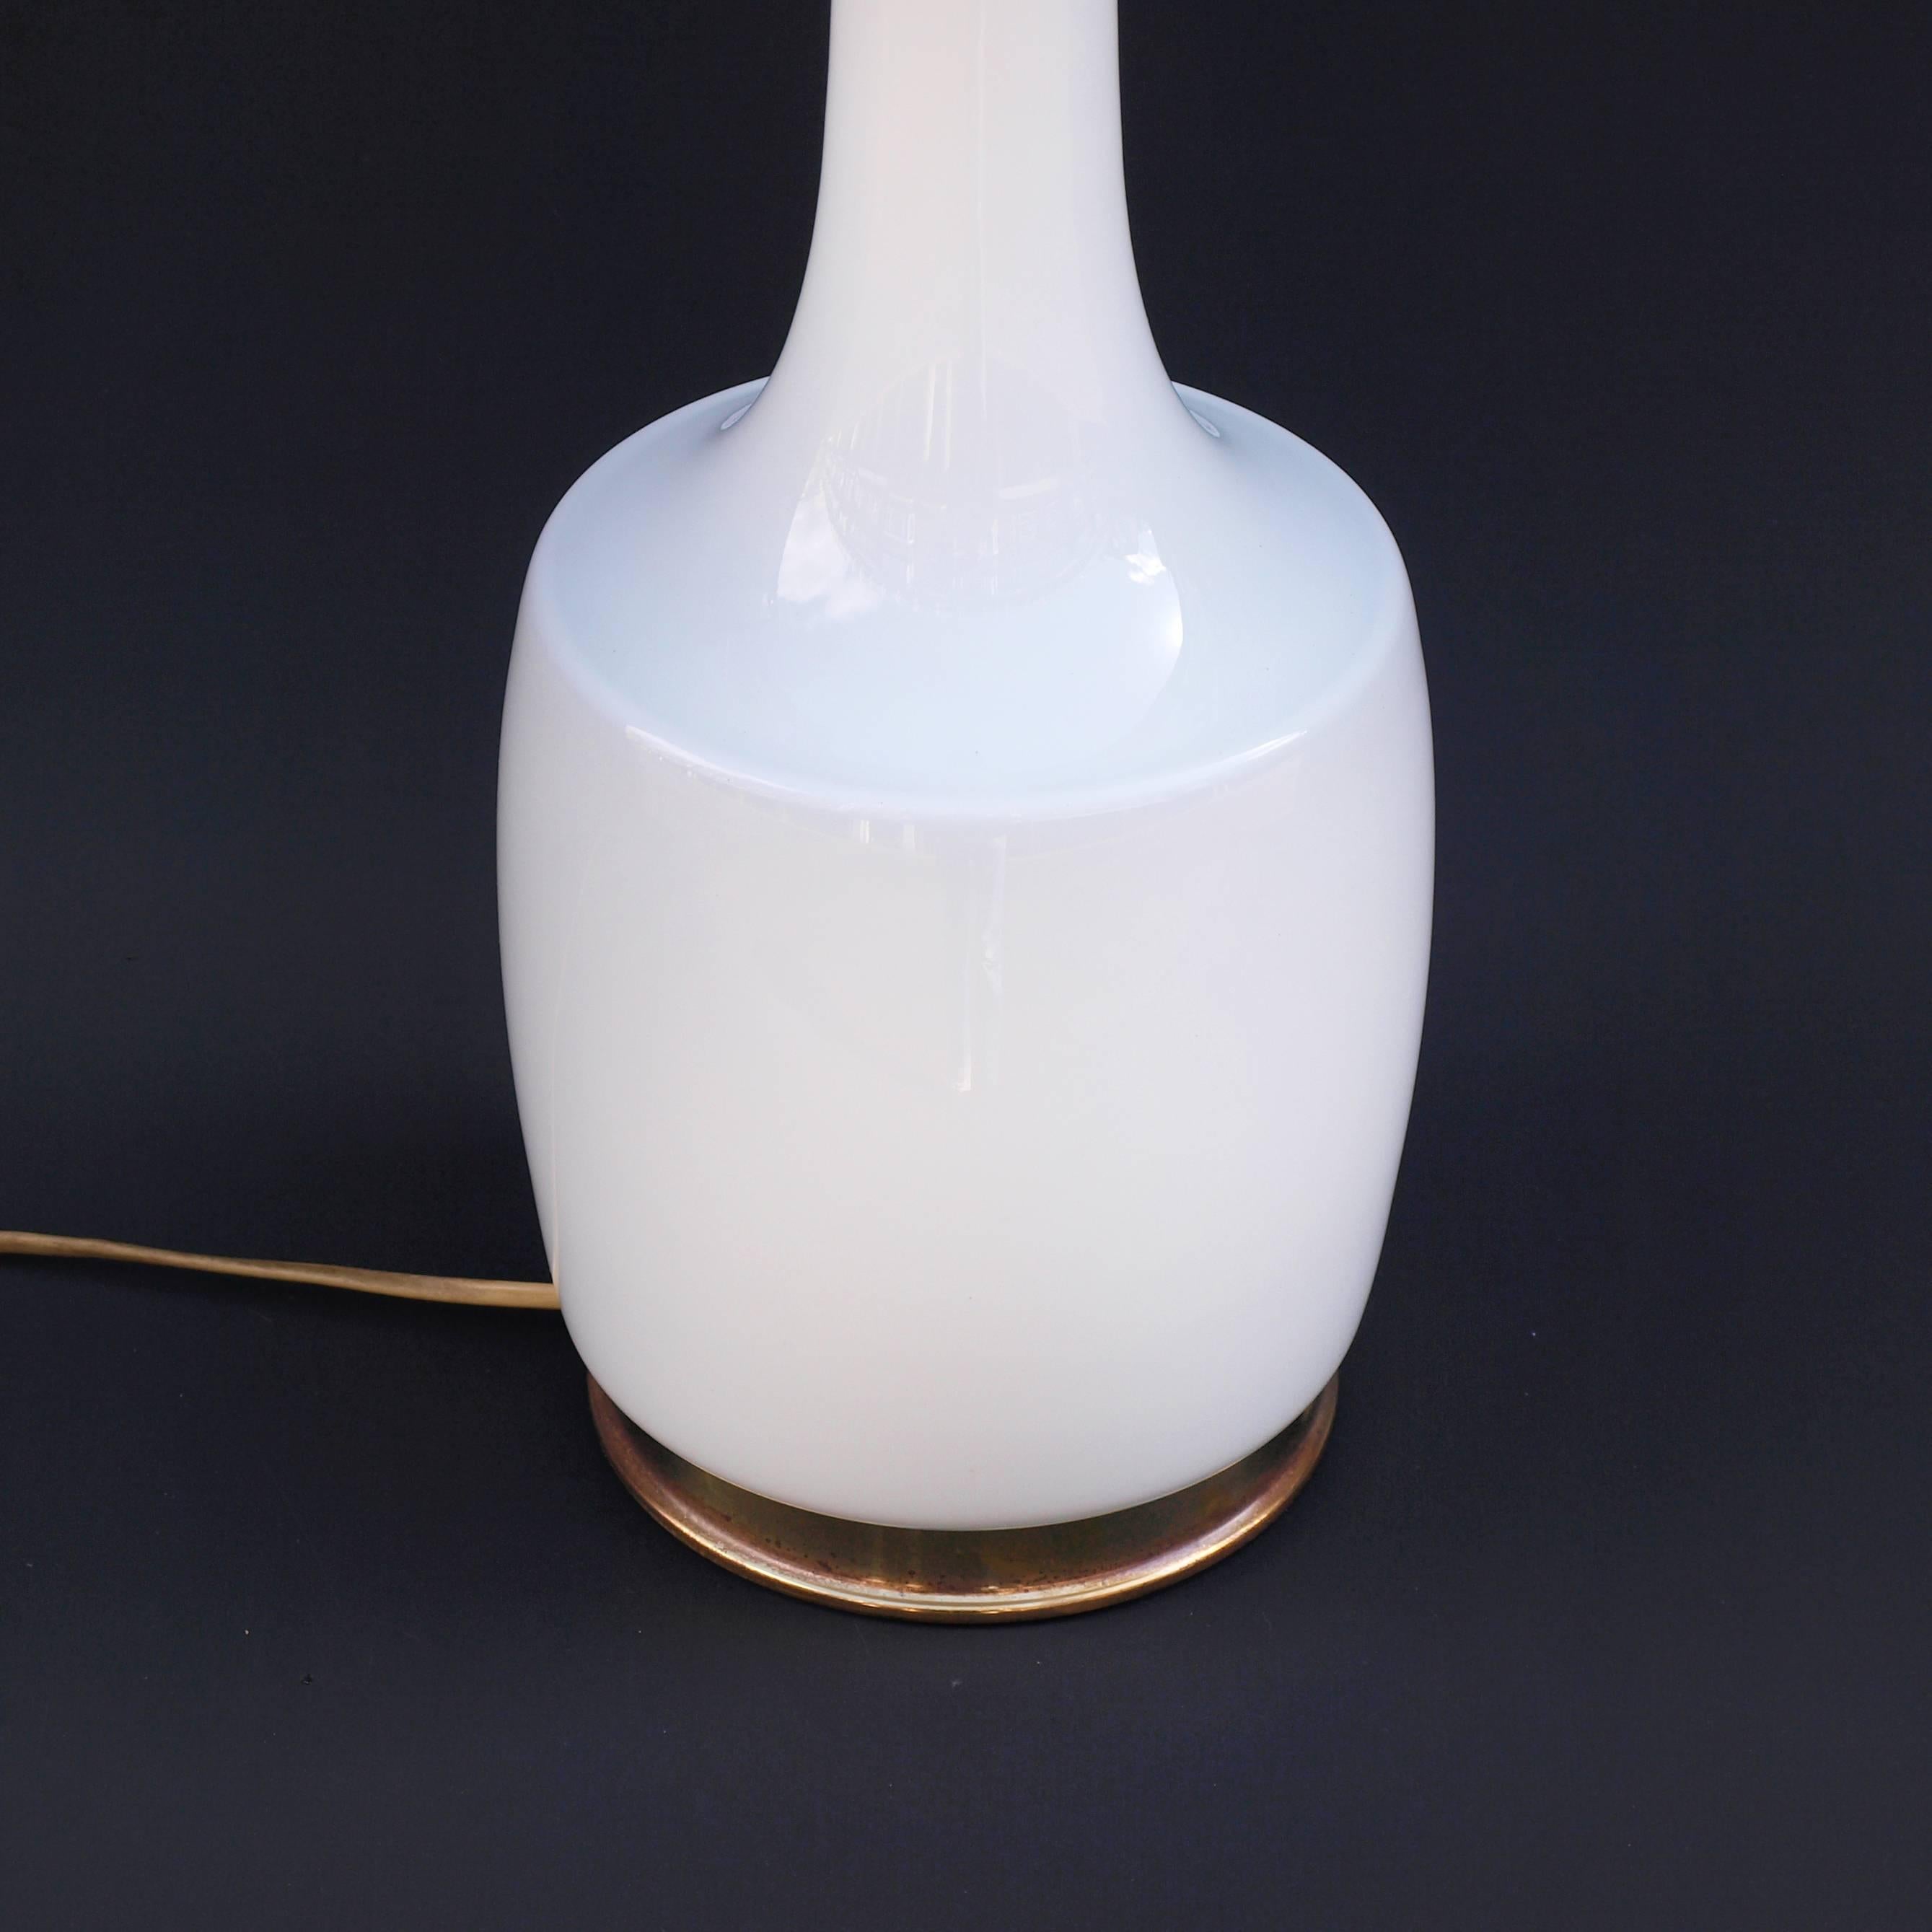 Une lampe en verre opalin blanc des années 1960 conçue par Holm Sorensen. Un design exceptionnel par la simplicité de sa forme, de sa fonction et de son matériau, avec une finition en laiton à la base et au col. Le minimalisme scandinave dans ce